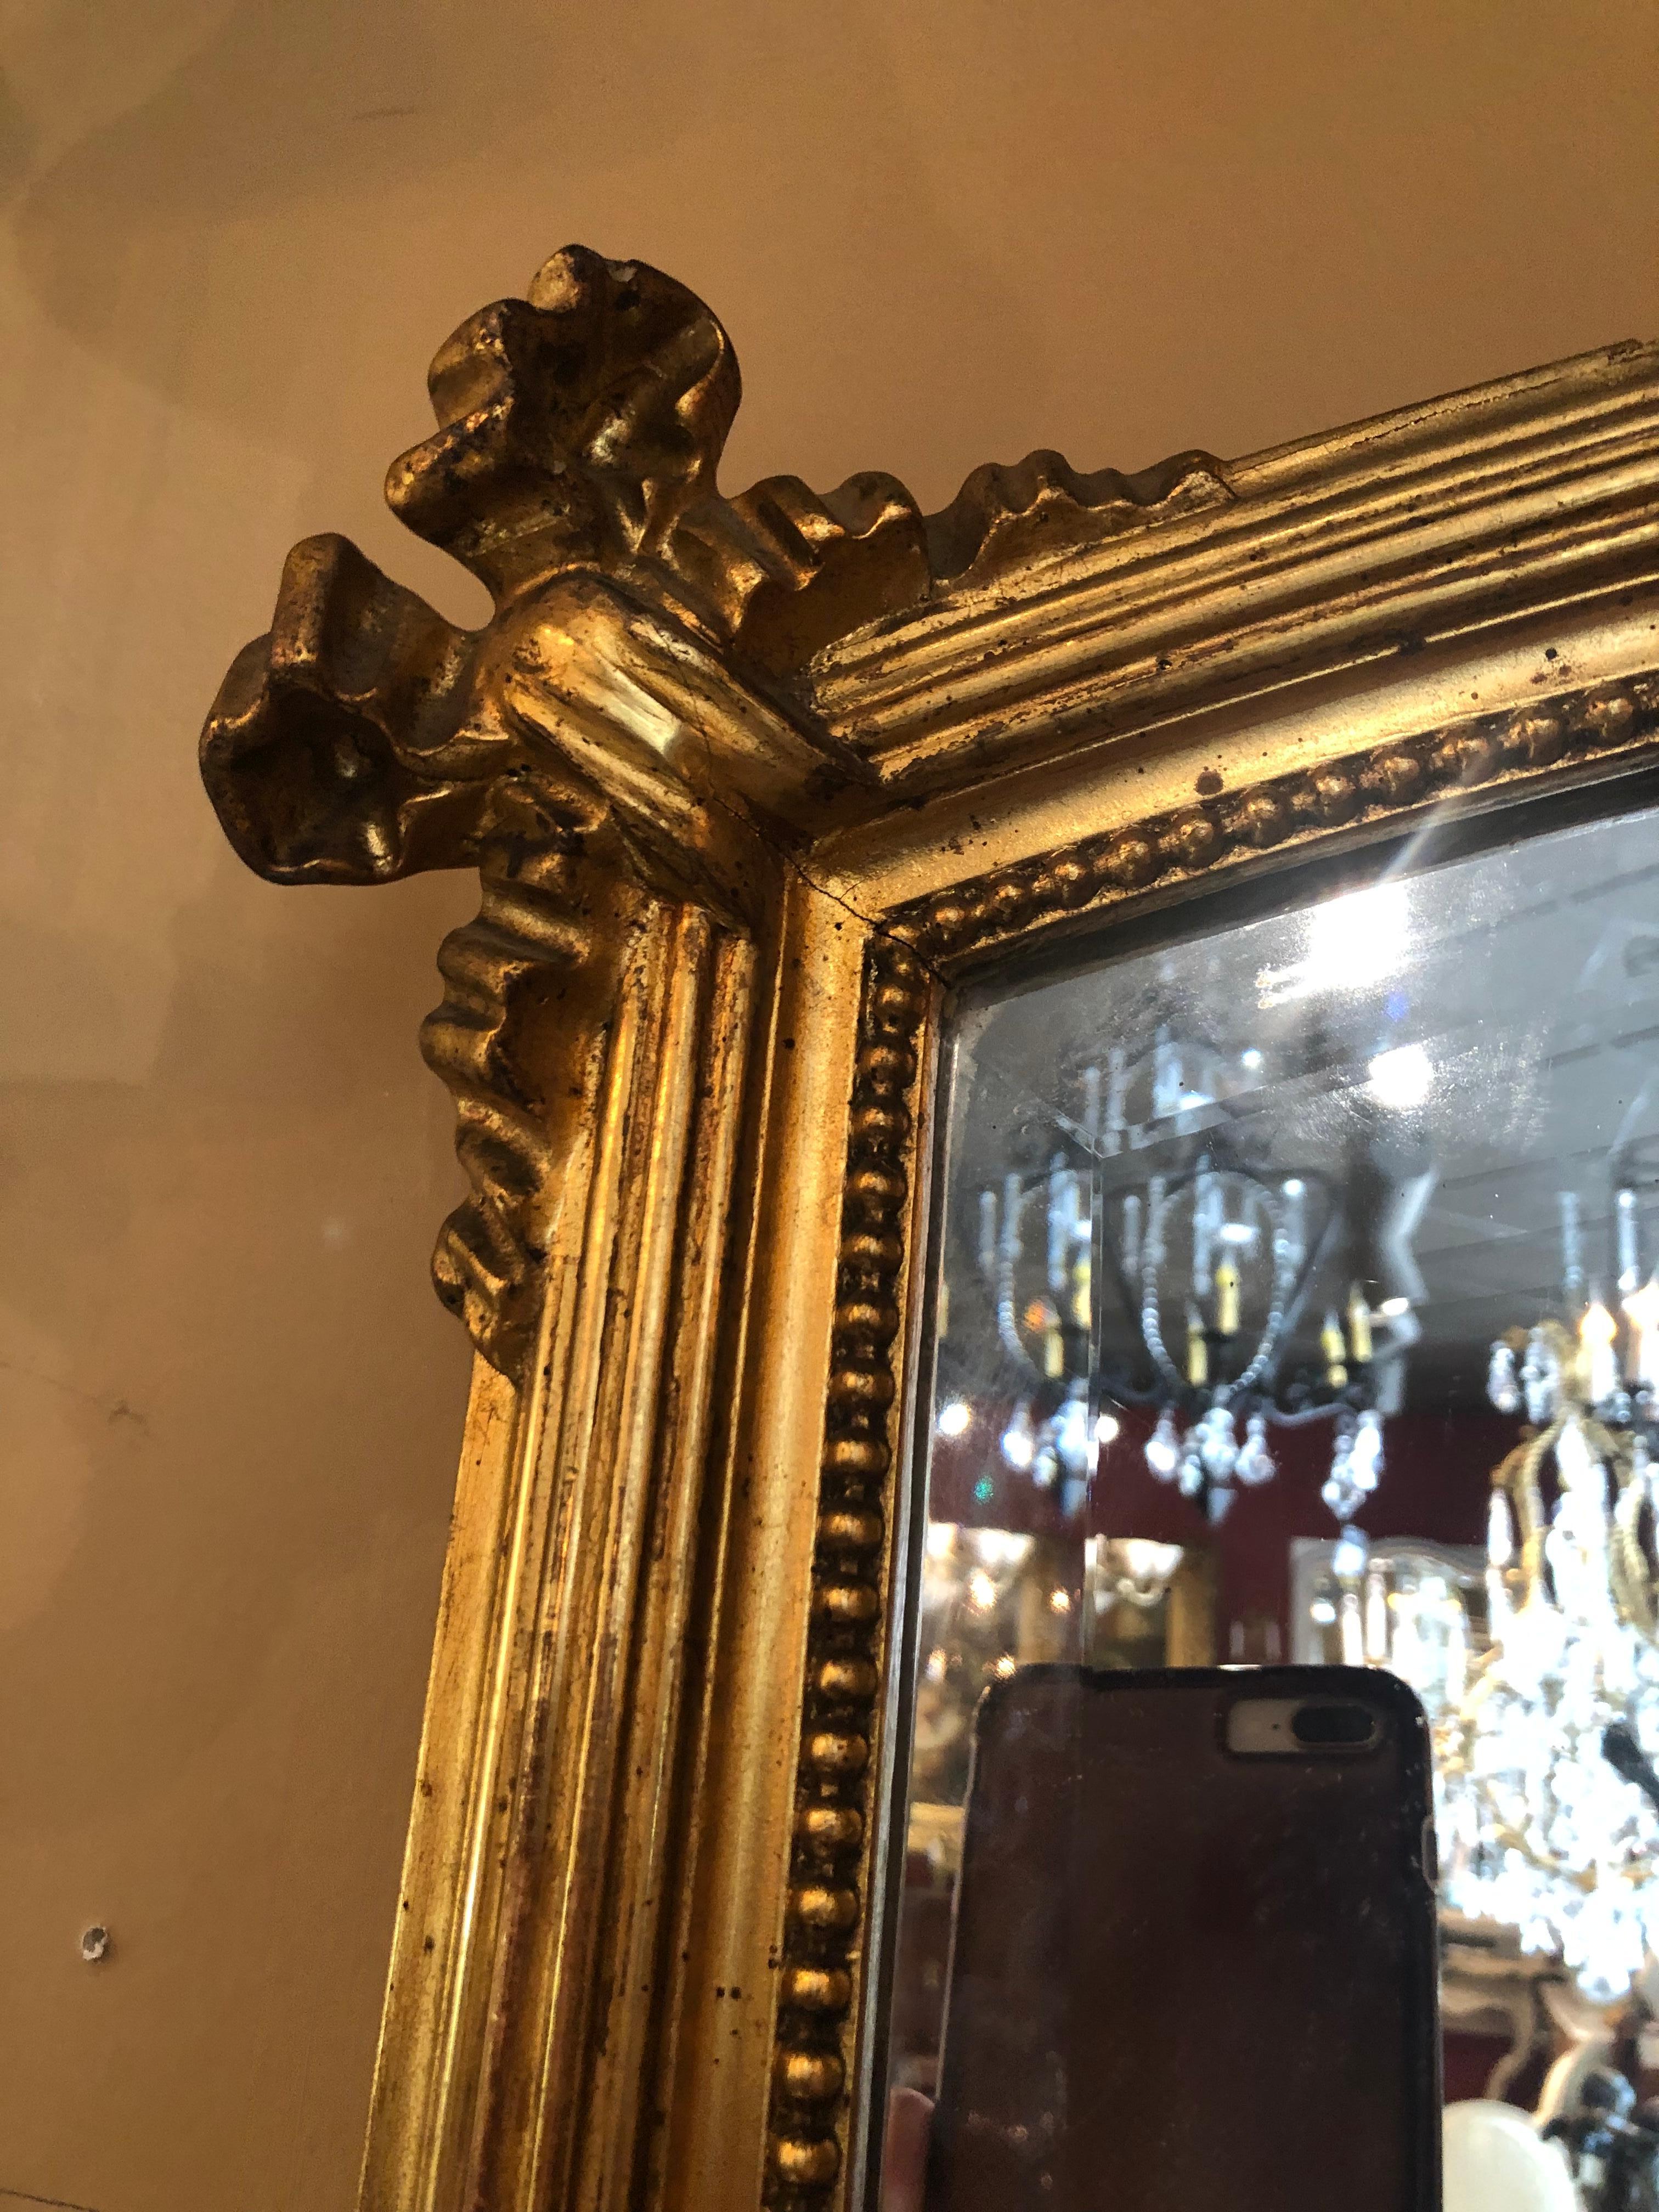 Miroir français de style Louis XVI en bois doré, 19ème siècle. Avec des motifs de rubans et de feuillages,
Garniture perlée, entourant la plaque de miroir biseauté.